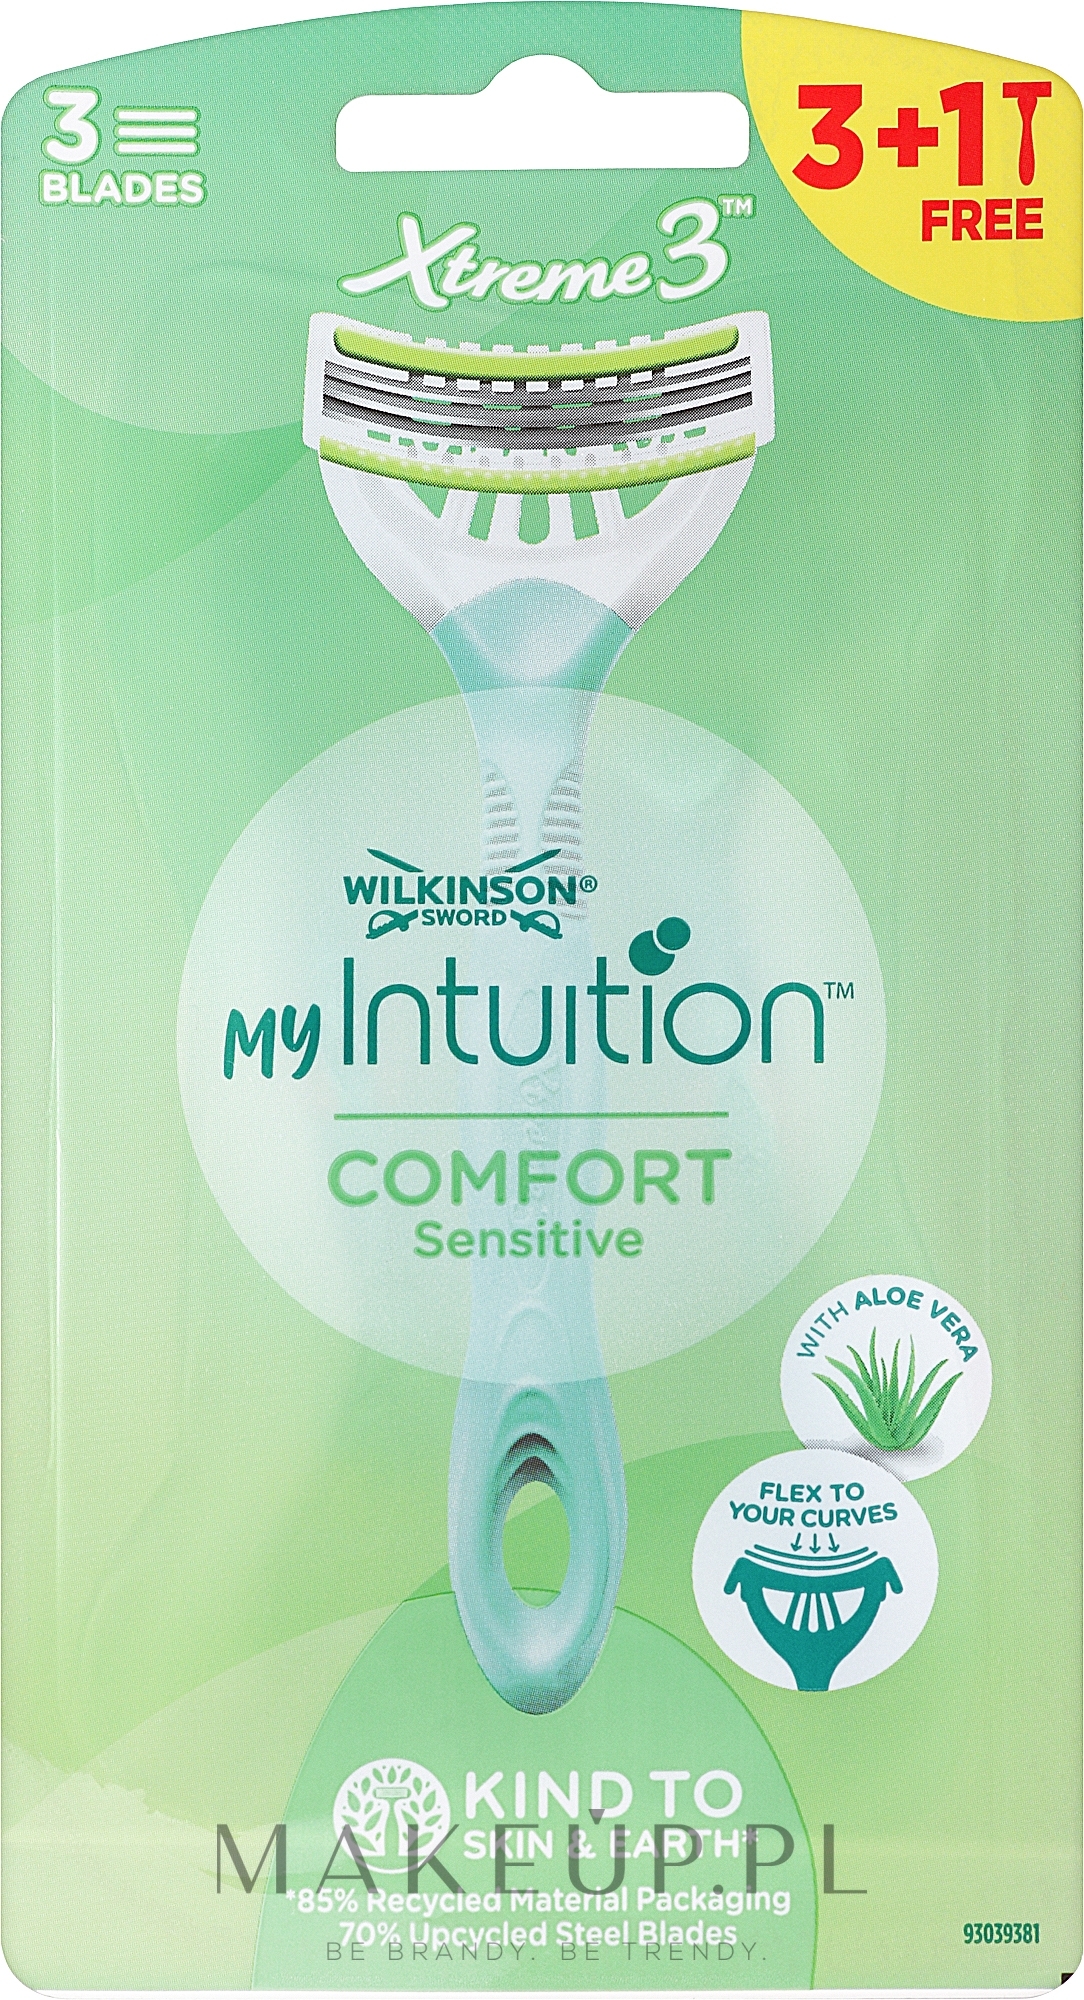 Jednorazowe maszynki do golenia, 4 szt. - Wilkinson Sword Xtreme 3 My Intuition Sensitive Comfort — Zdjęcie 4 szt.